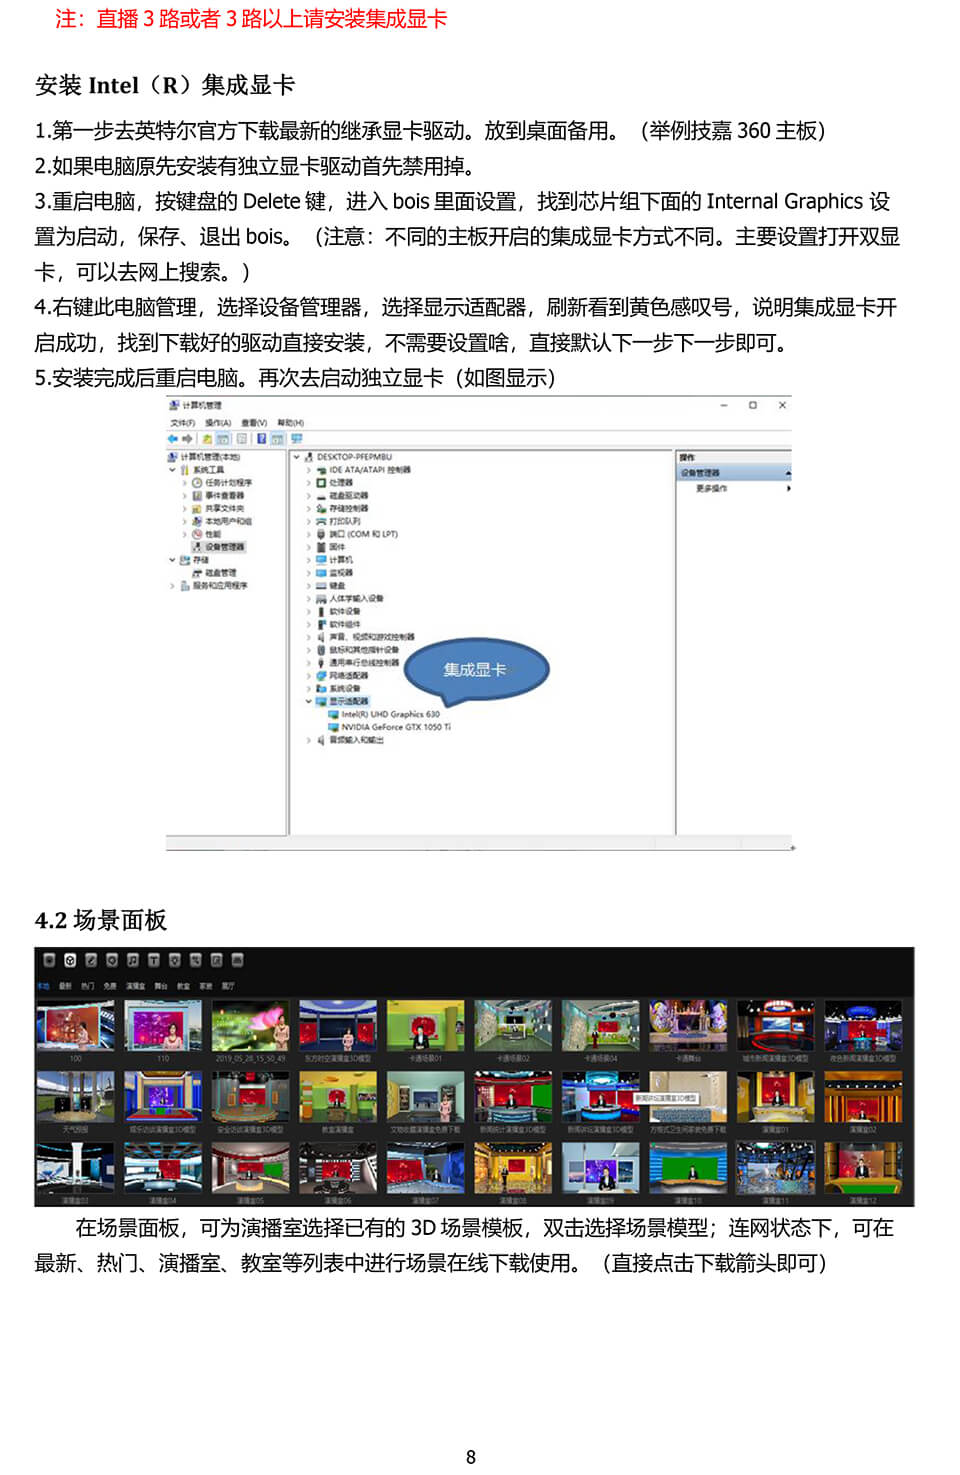 新一路渲染虚拟演播室用户手册-9.jpg